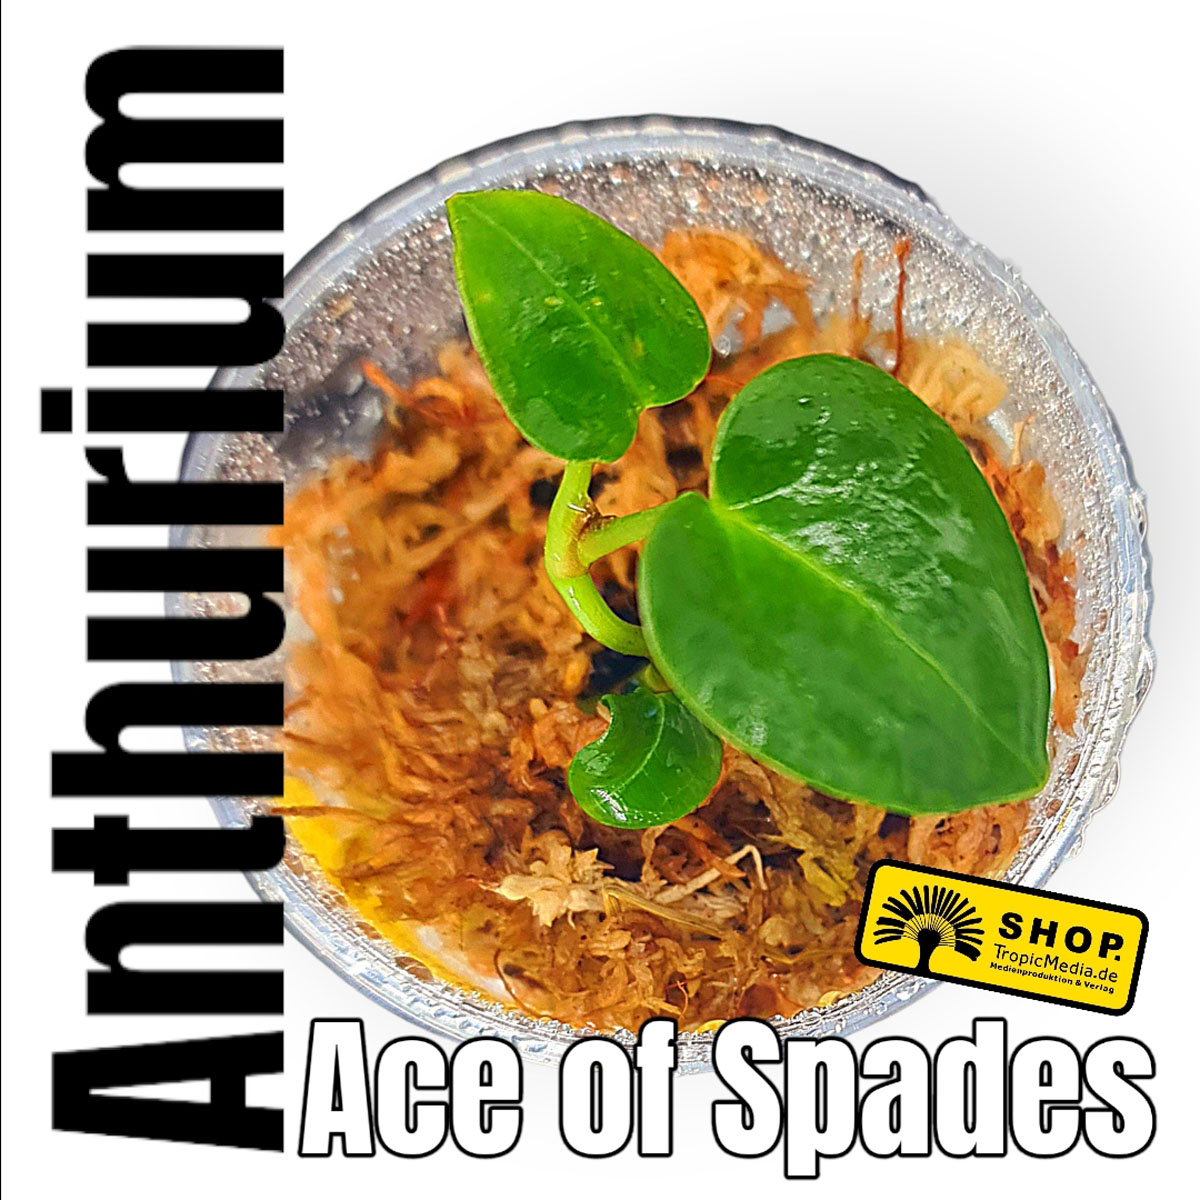 Anthurium Ace of Spades